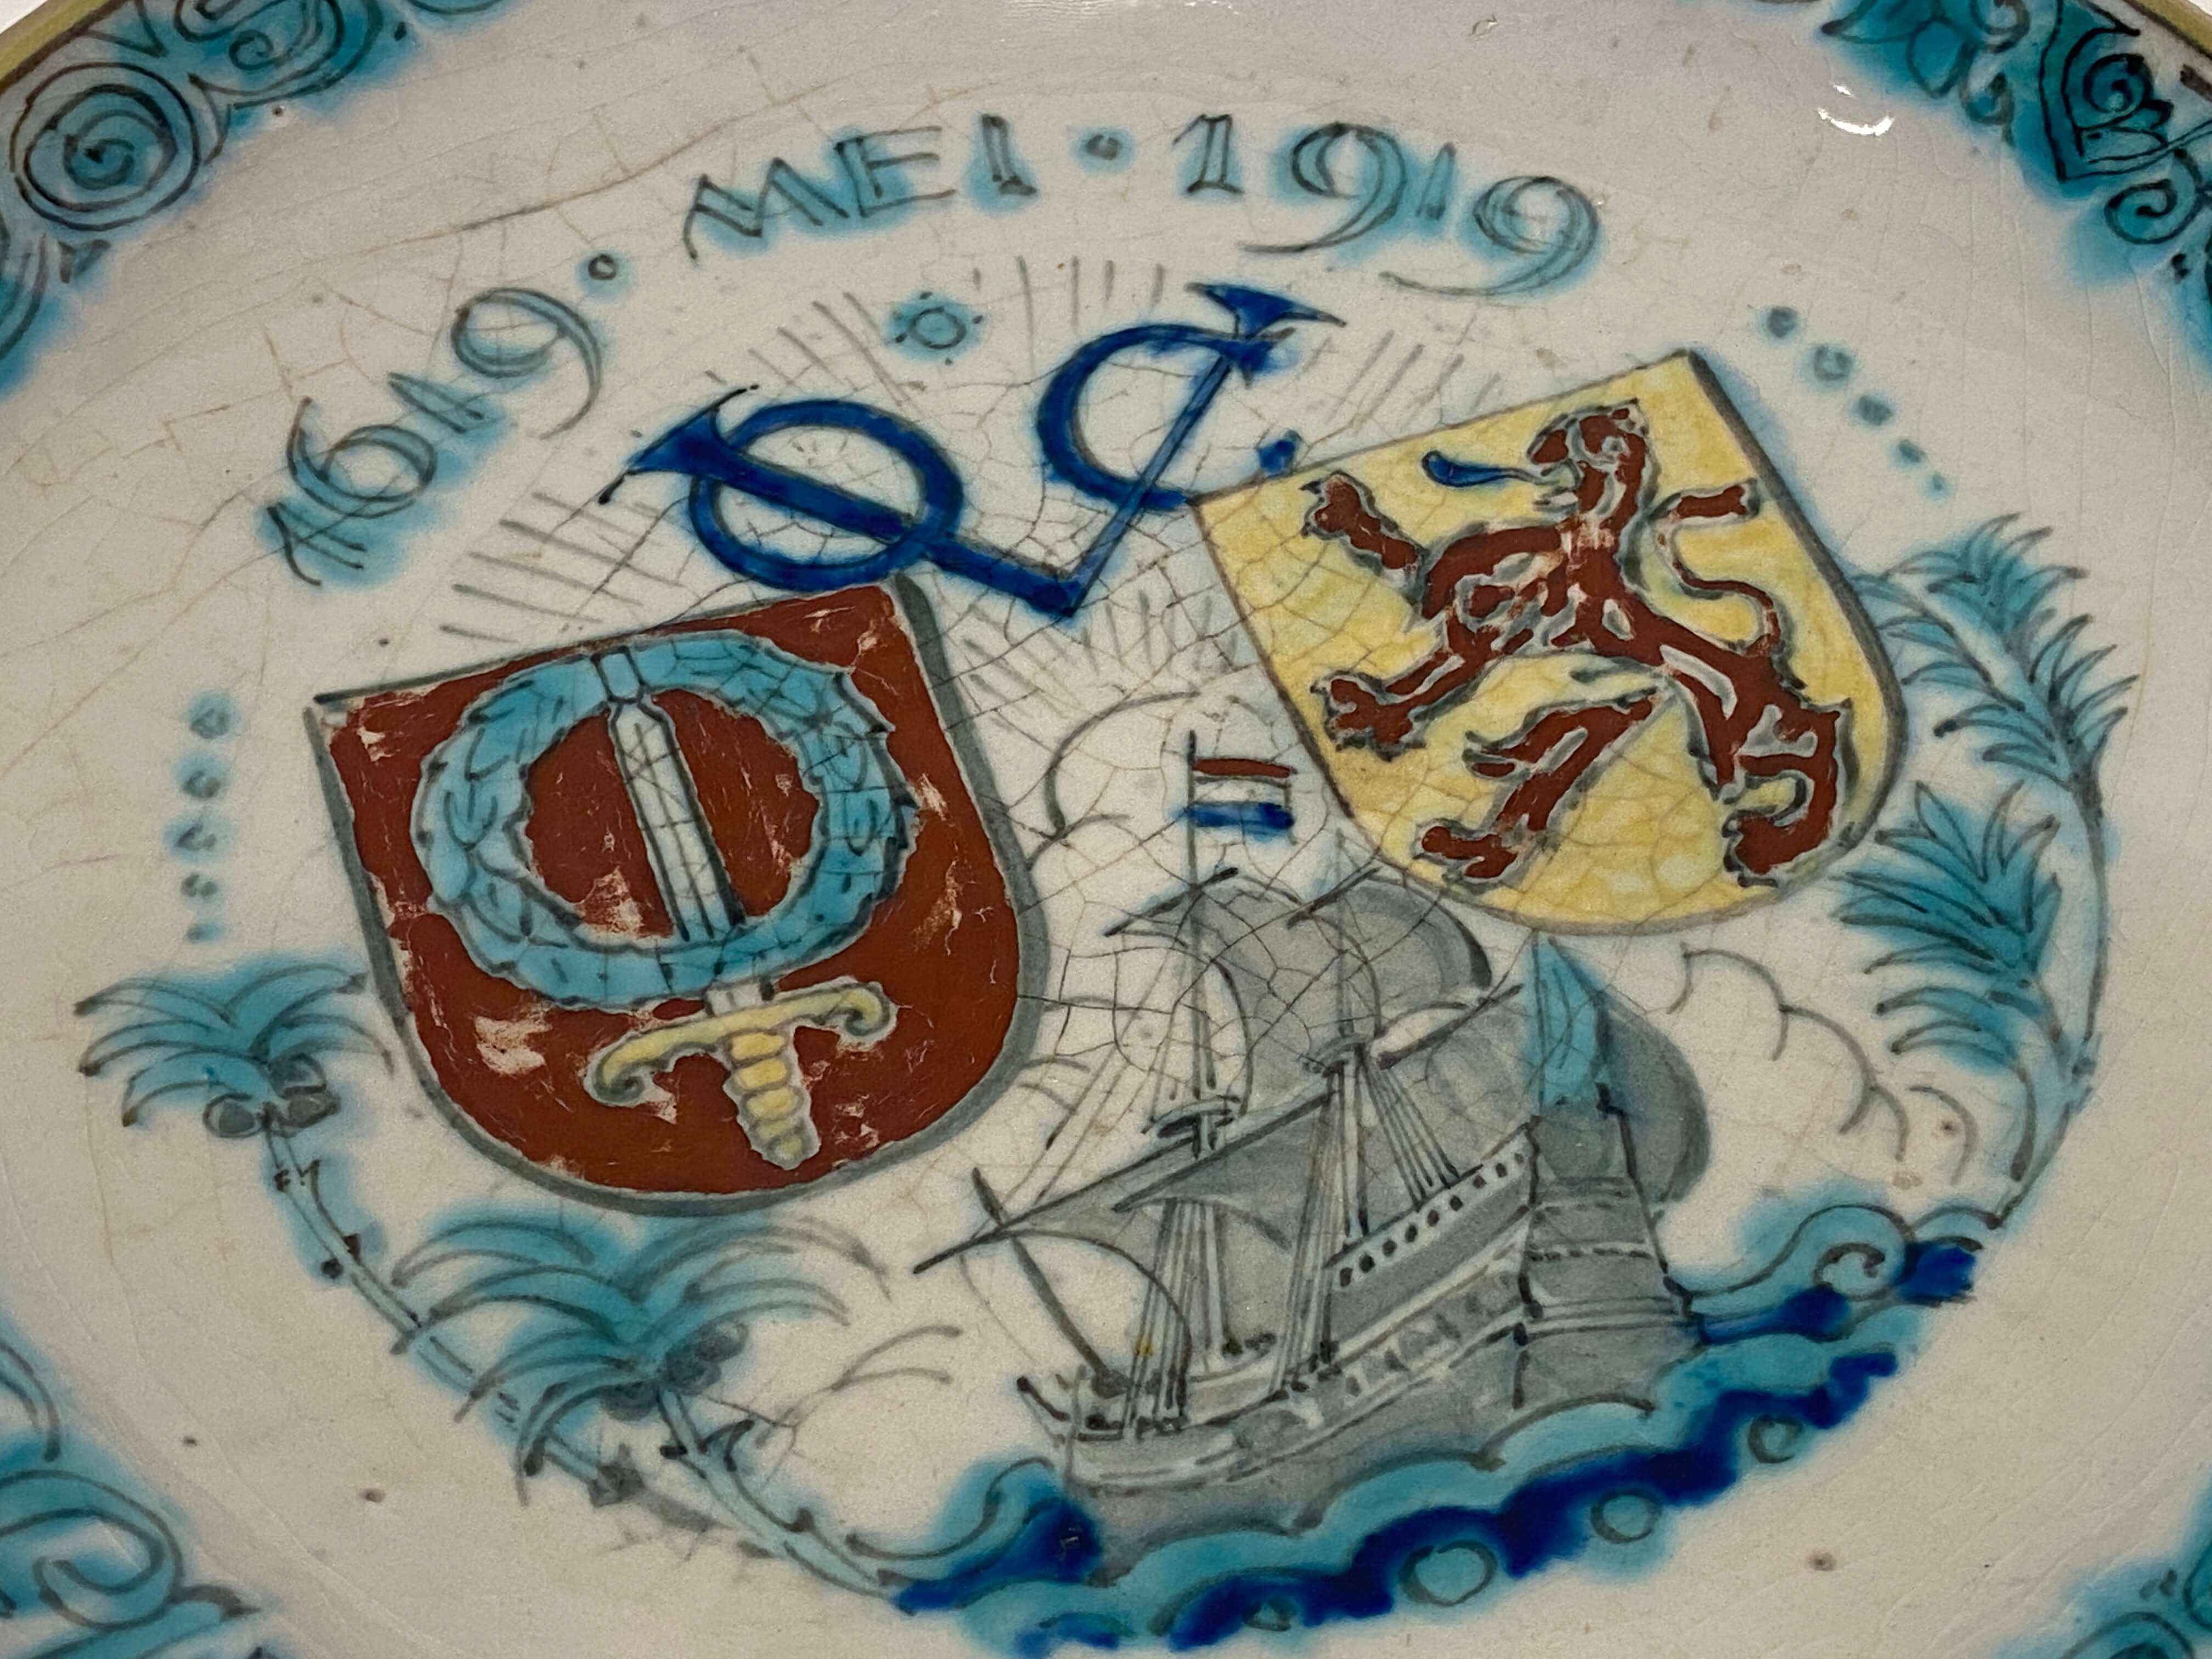 A Royal Delft de Porceleyne Fles earthenware polychrome Commemorative VOC plate, 1619-1919